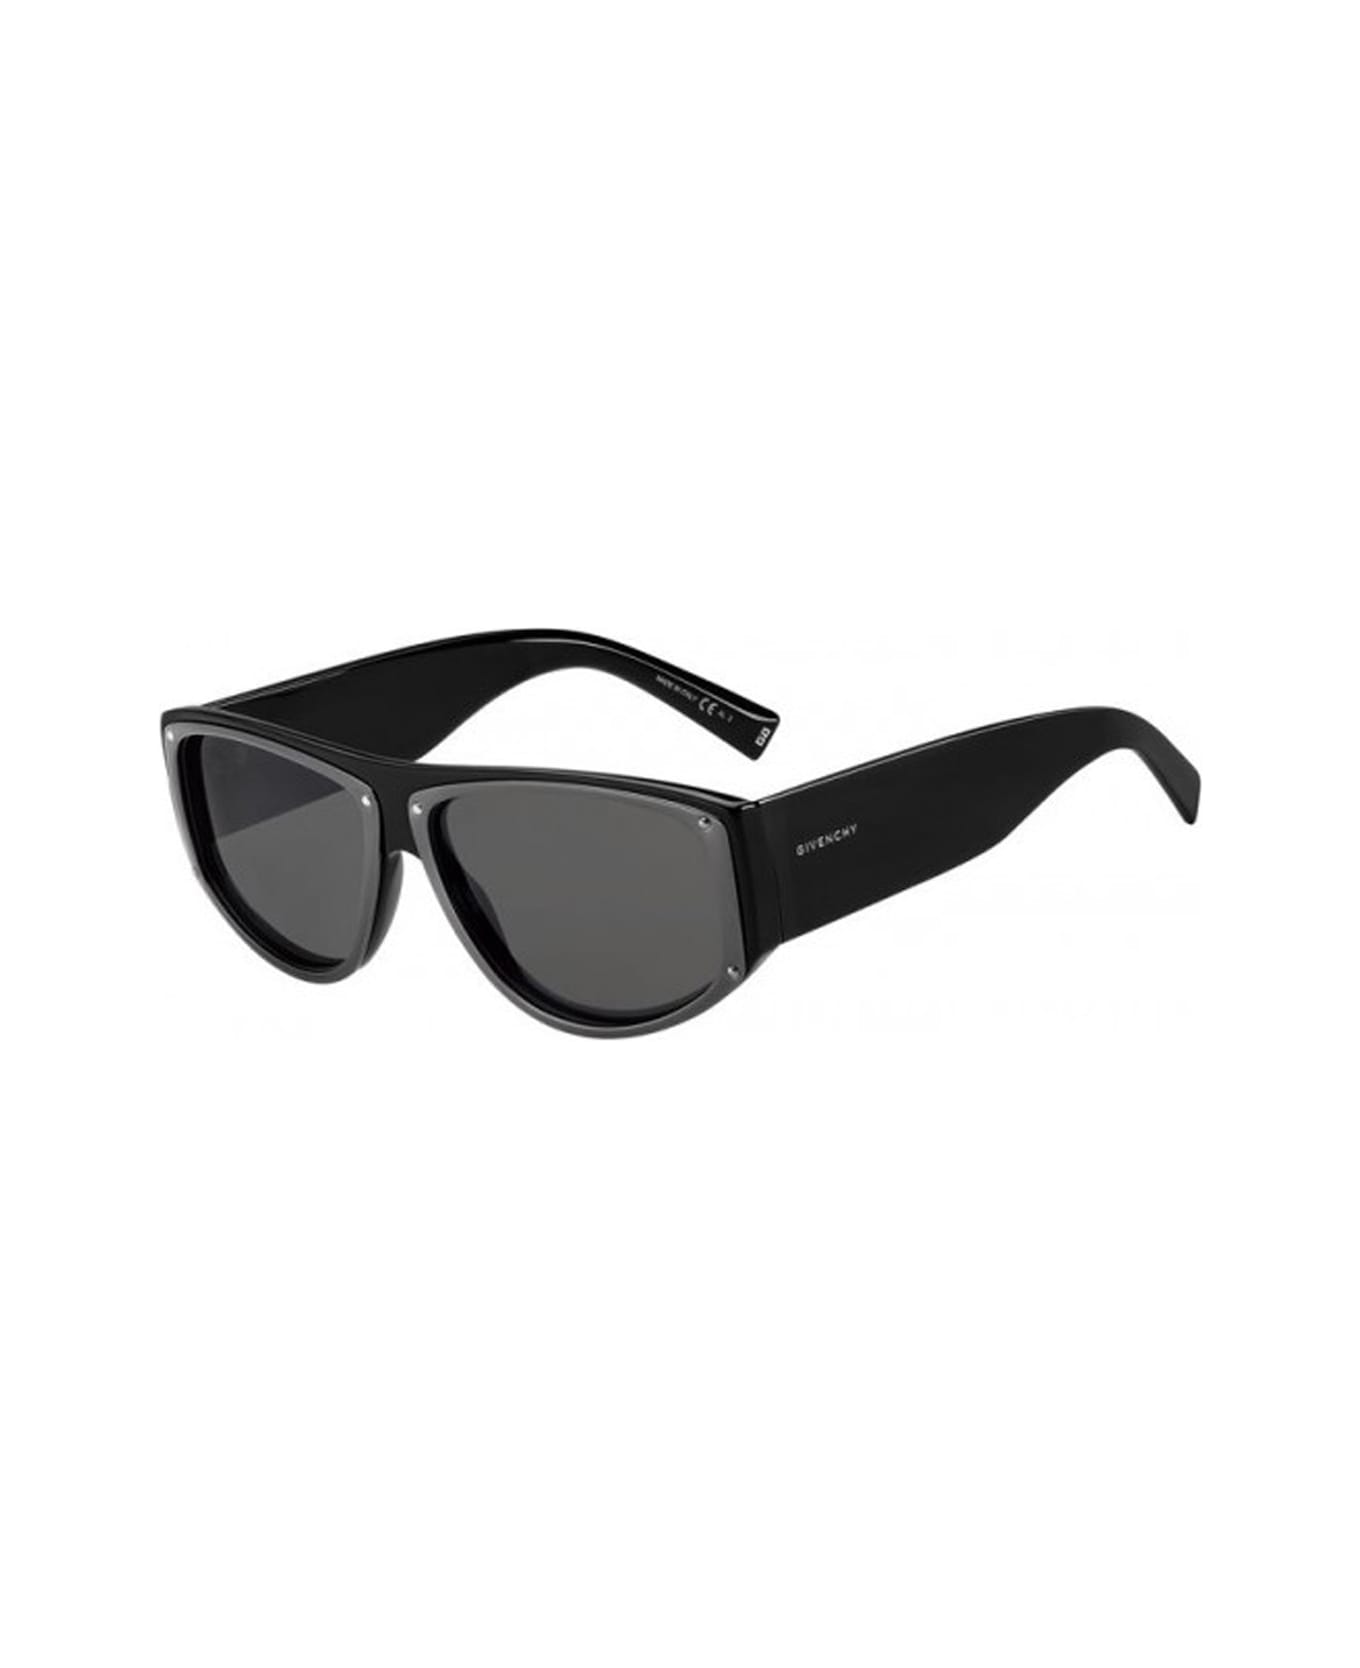 Givenchy Eyewear Gv 7177/s Sunglasses - Nero